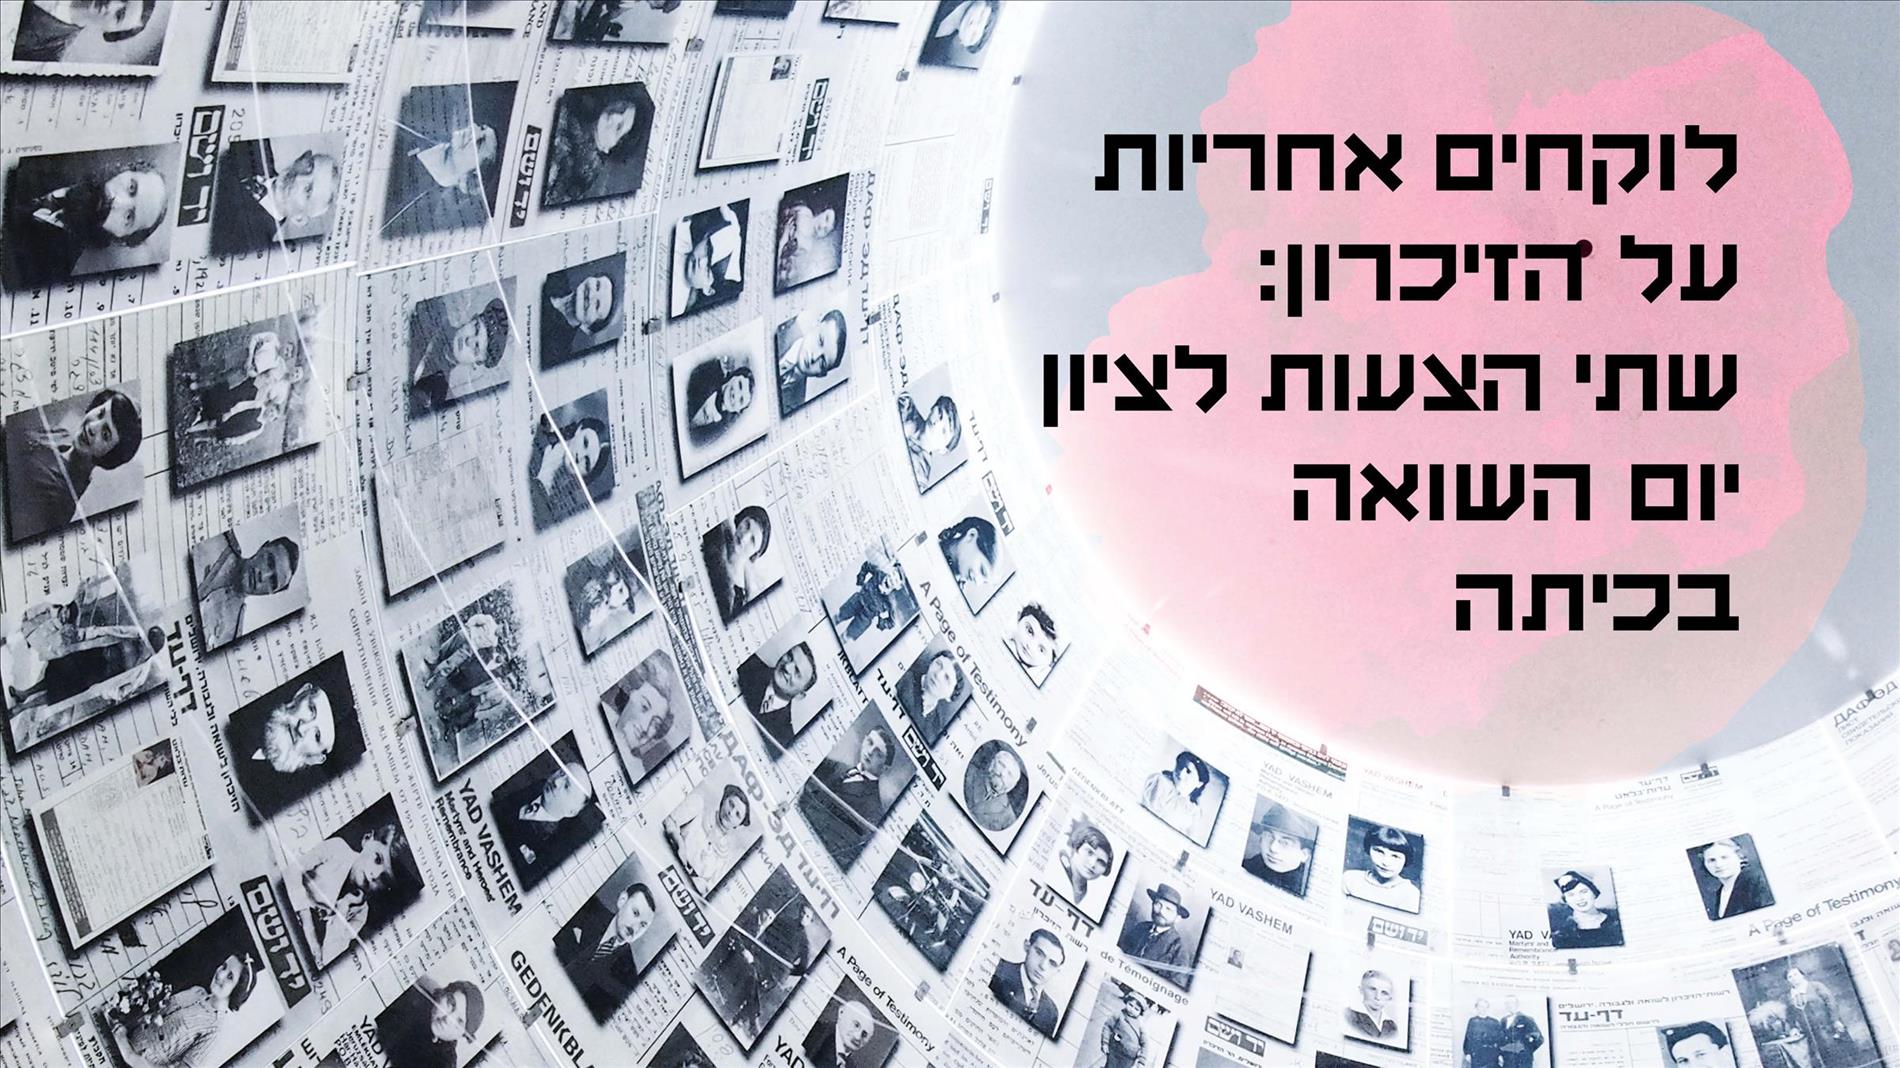 לוקחים אחריות על הזיכרון: שתי הצעות לציון יום השואה בכיתה